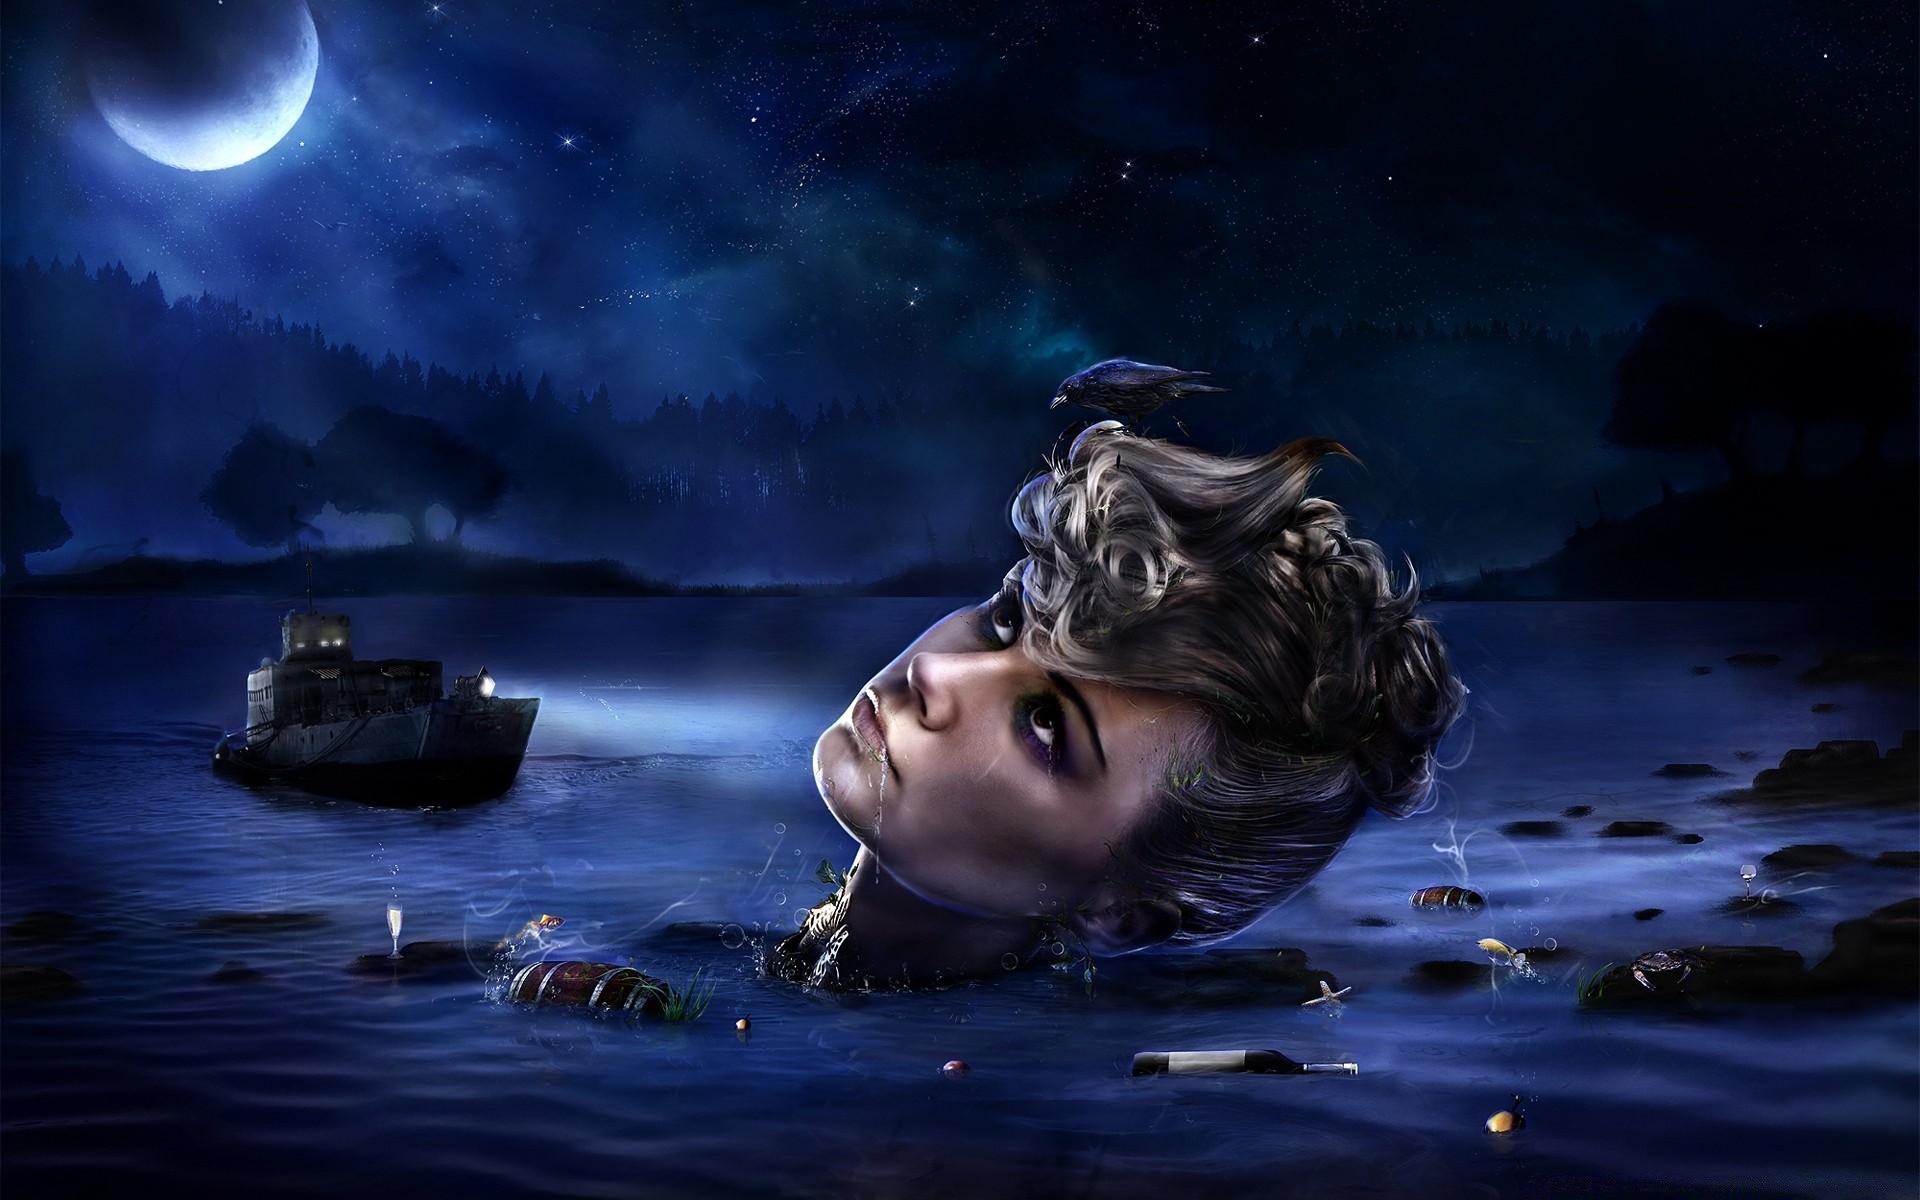 креатив луна воды девушка море океан портрет подводный вечером женщина фантазия темный отражение модель искусство свет